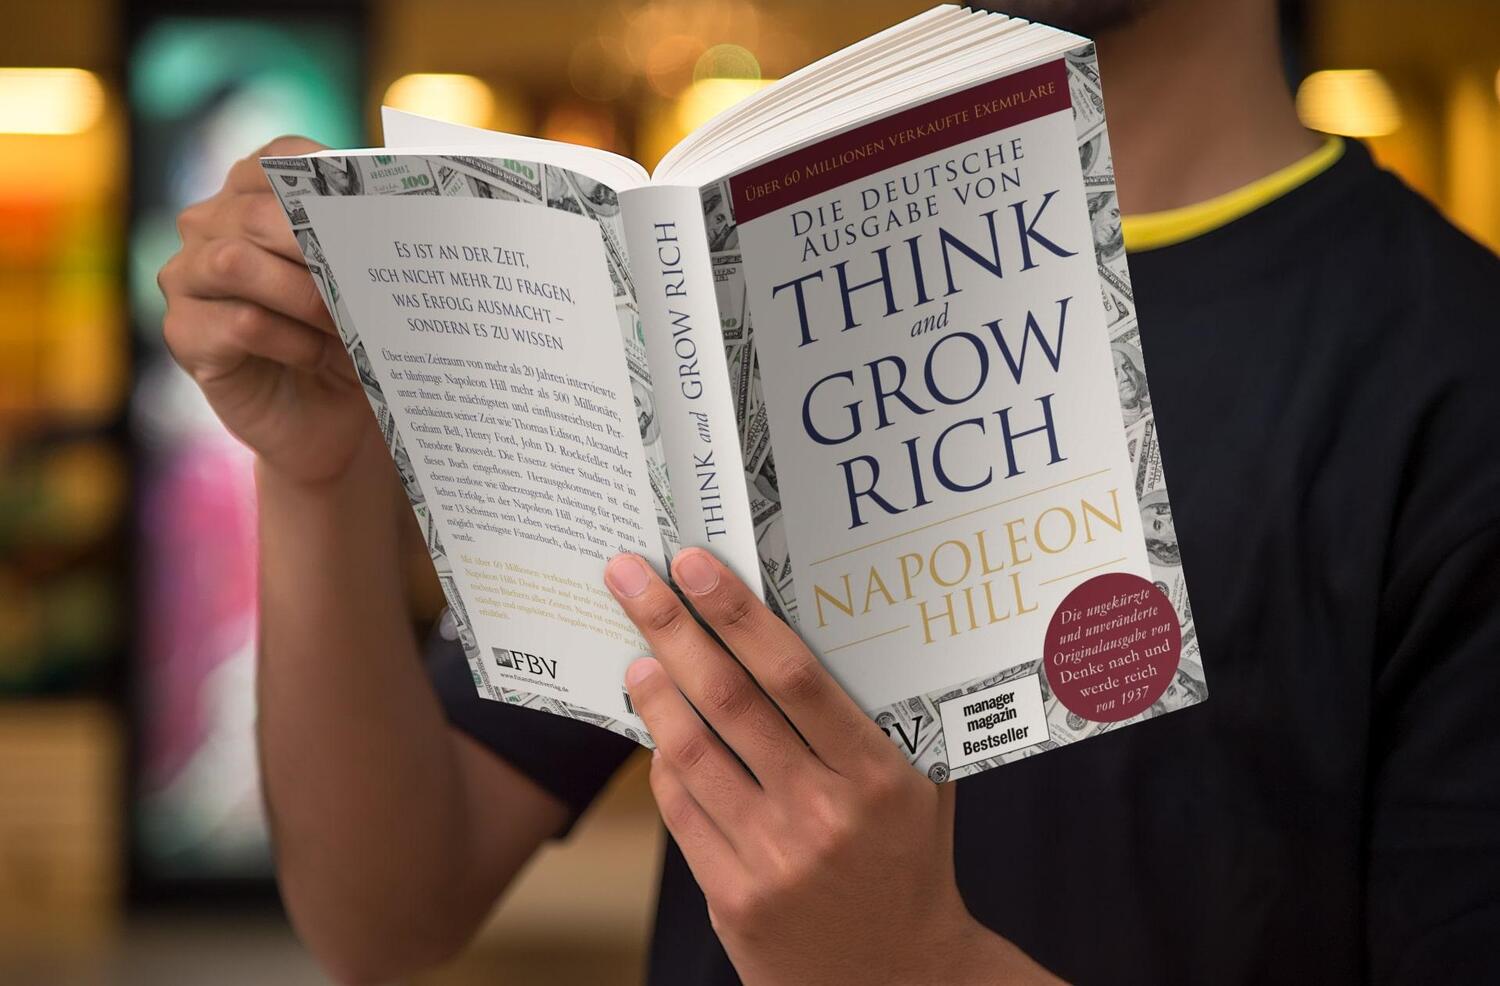 Bild: 9783959721714 | Think and Grow Rich - Deutsche Ausgabe | Napoleon Hill | Taschenbuch